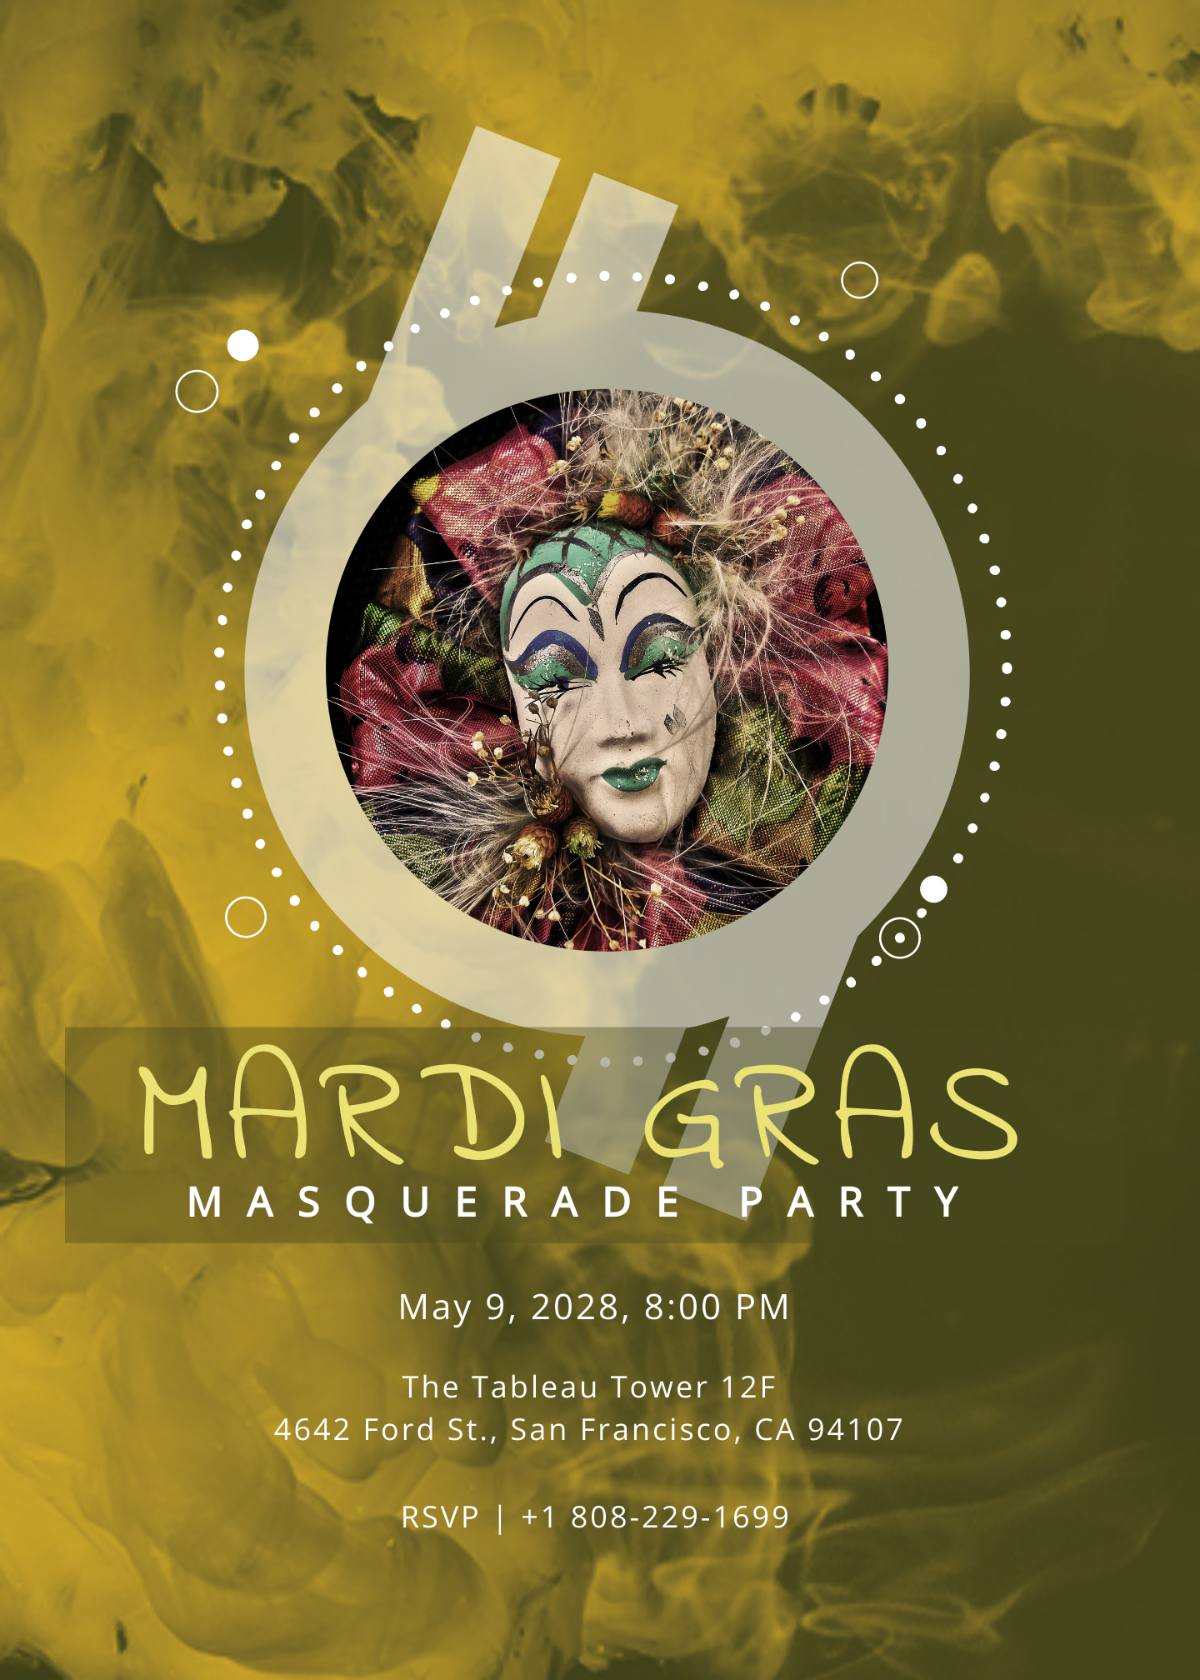 Masquerade Ball Invitation Mardi Gras Party Template